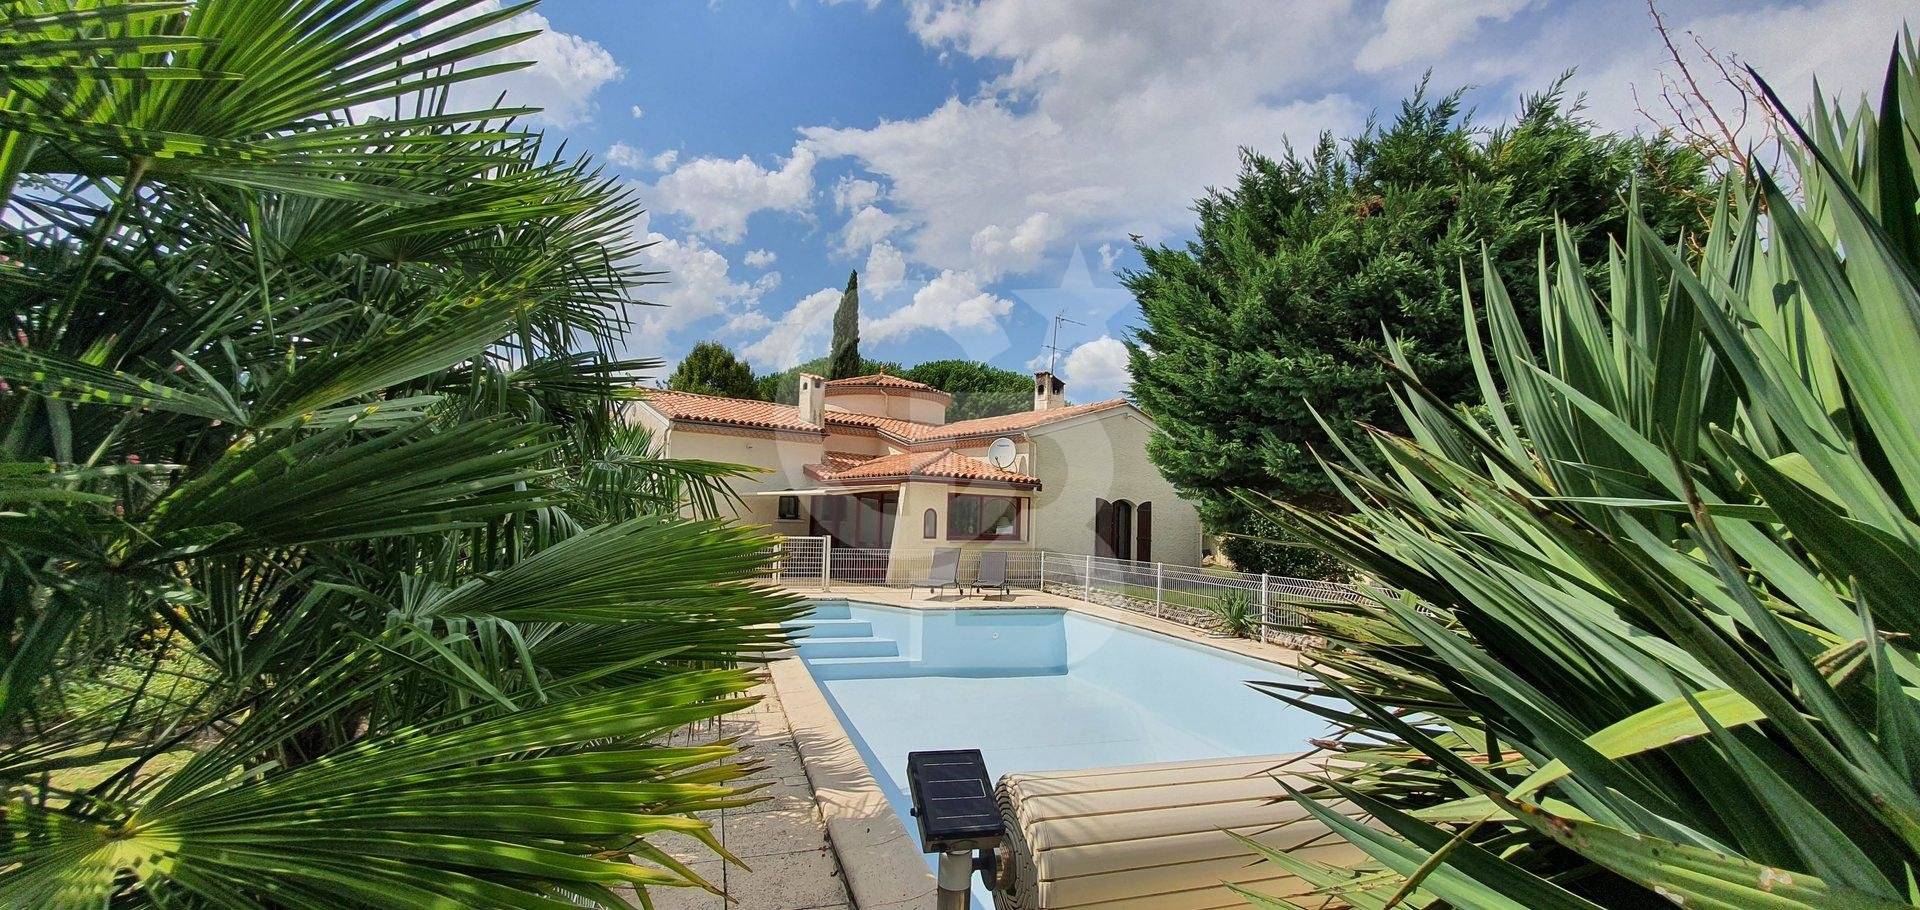 Maison avec piscine et grand terrain à vendre près de Bordeaux à CADAUJAC 33140